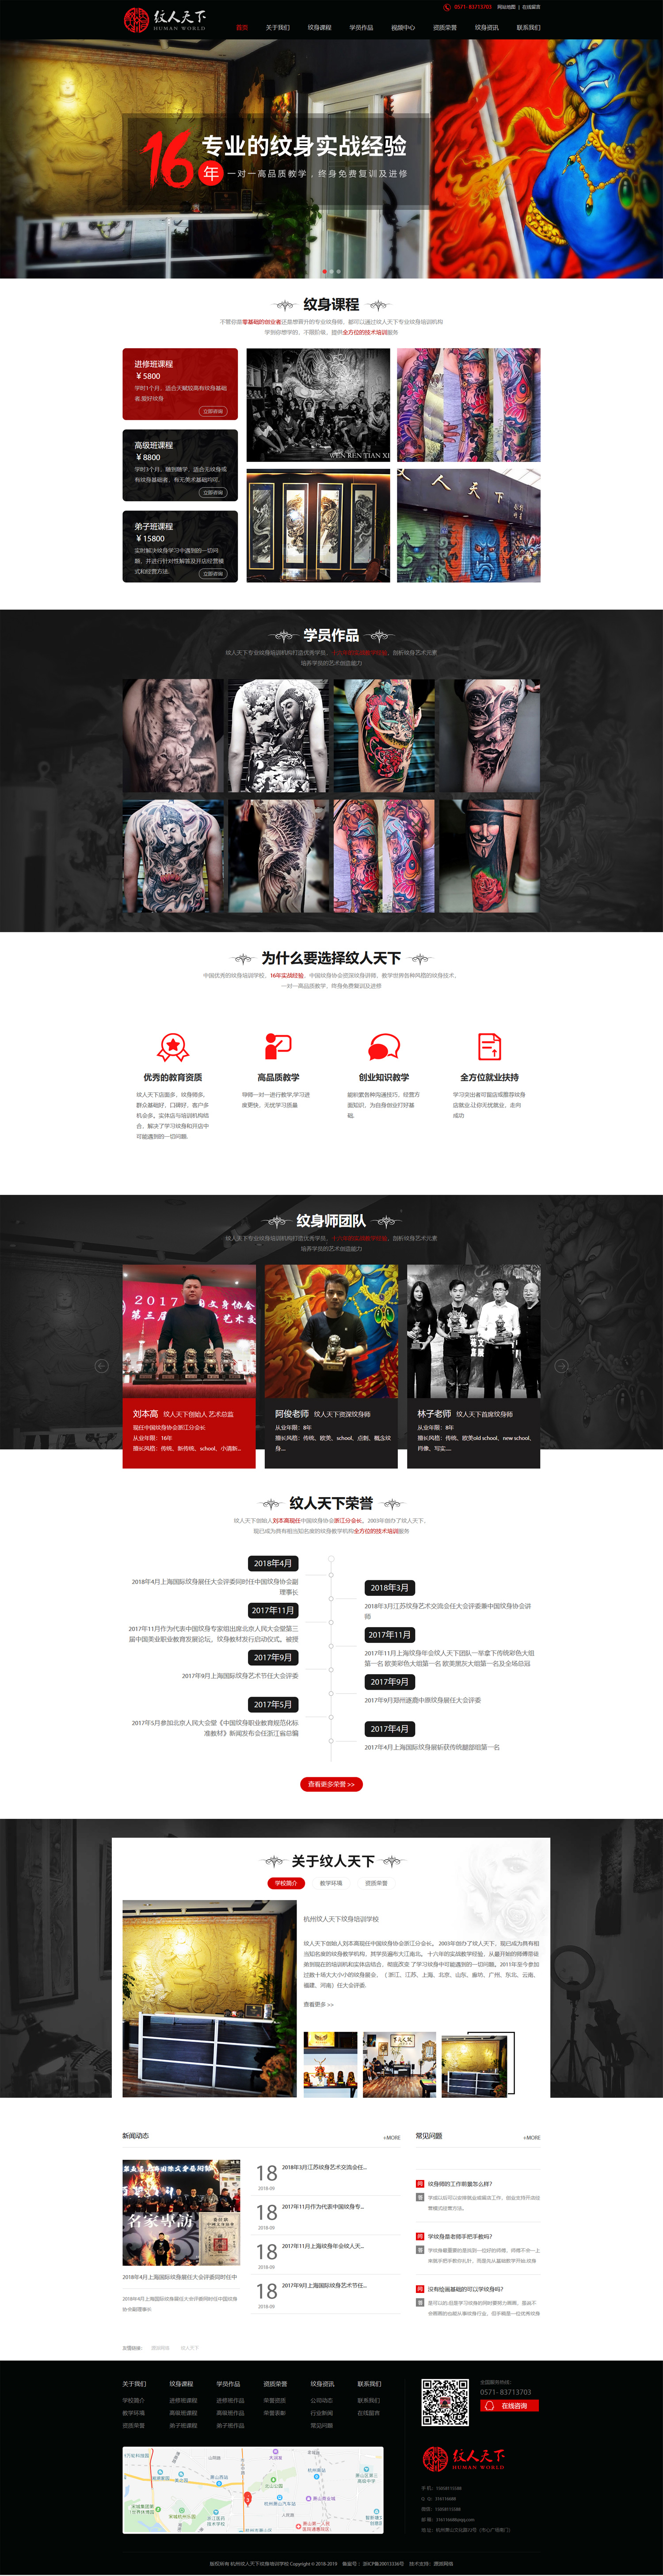 教育培训网站设计|杭州纹人天下培训机构